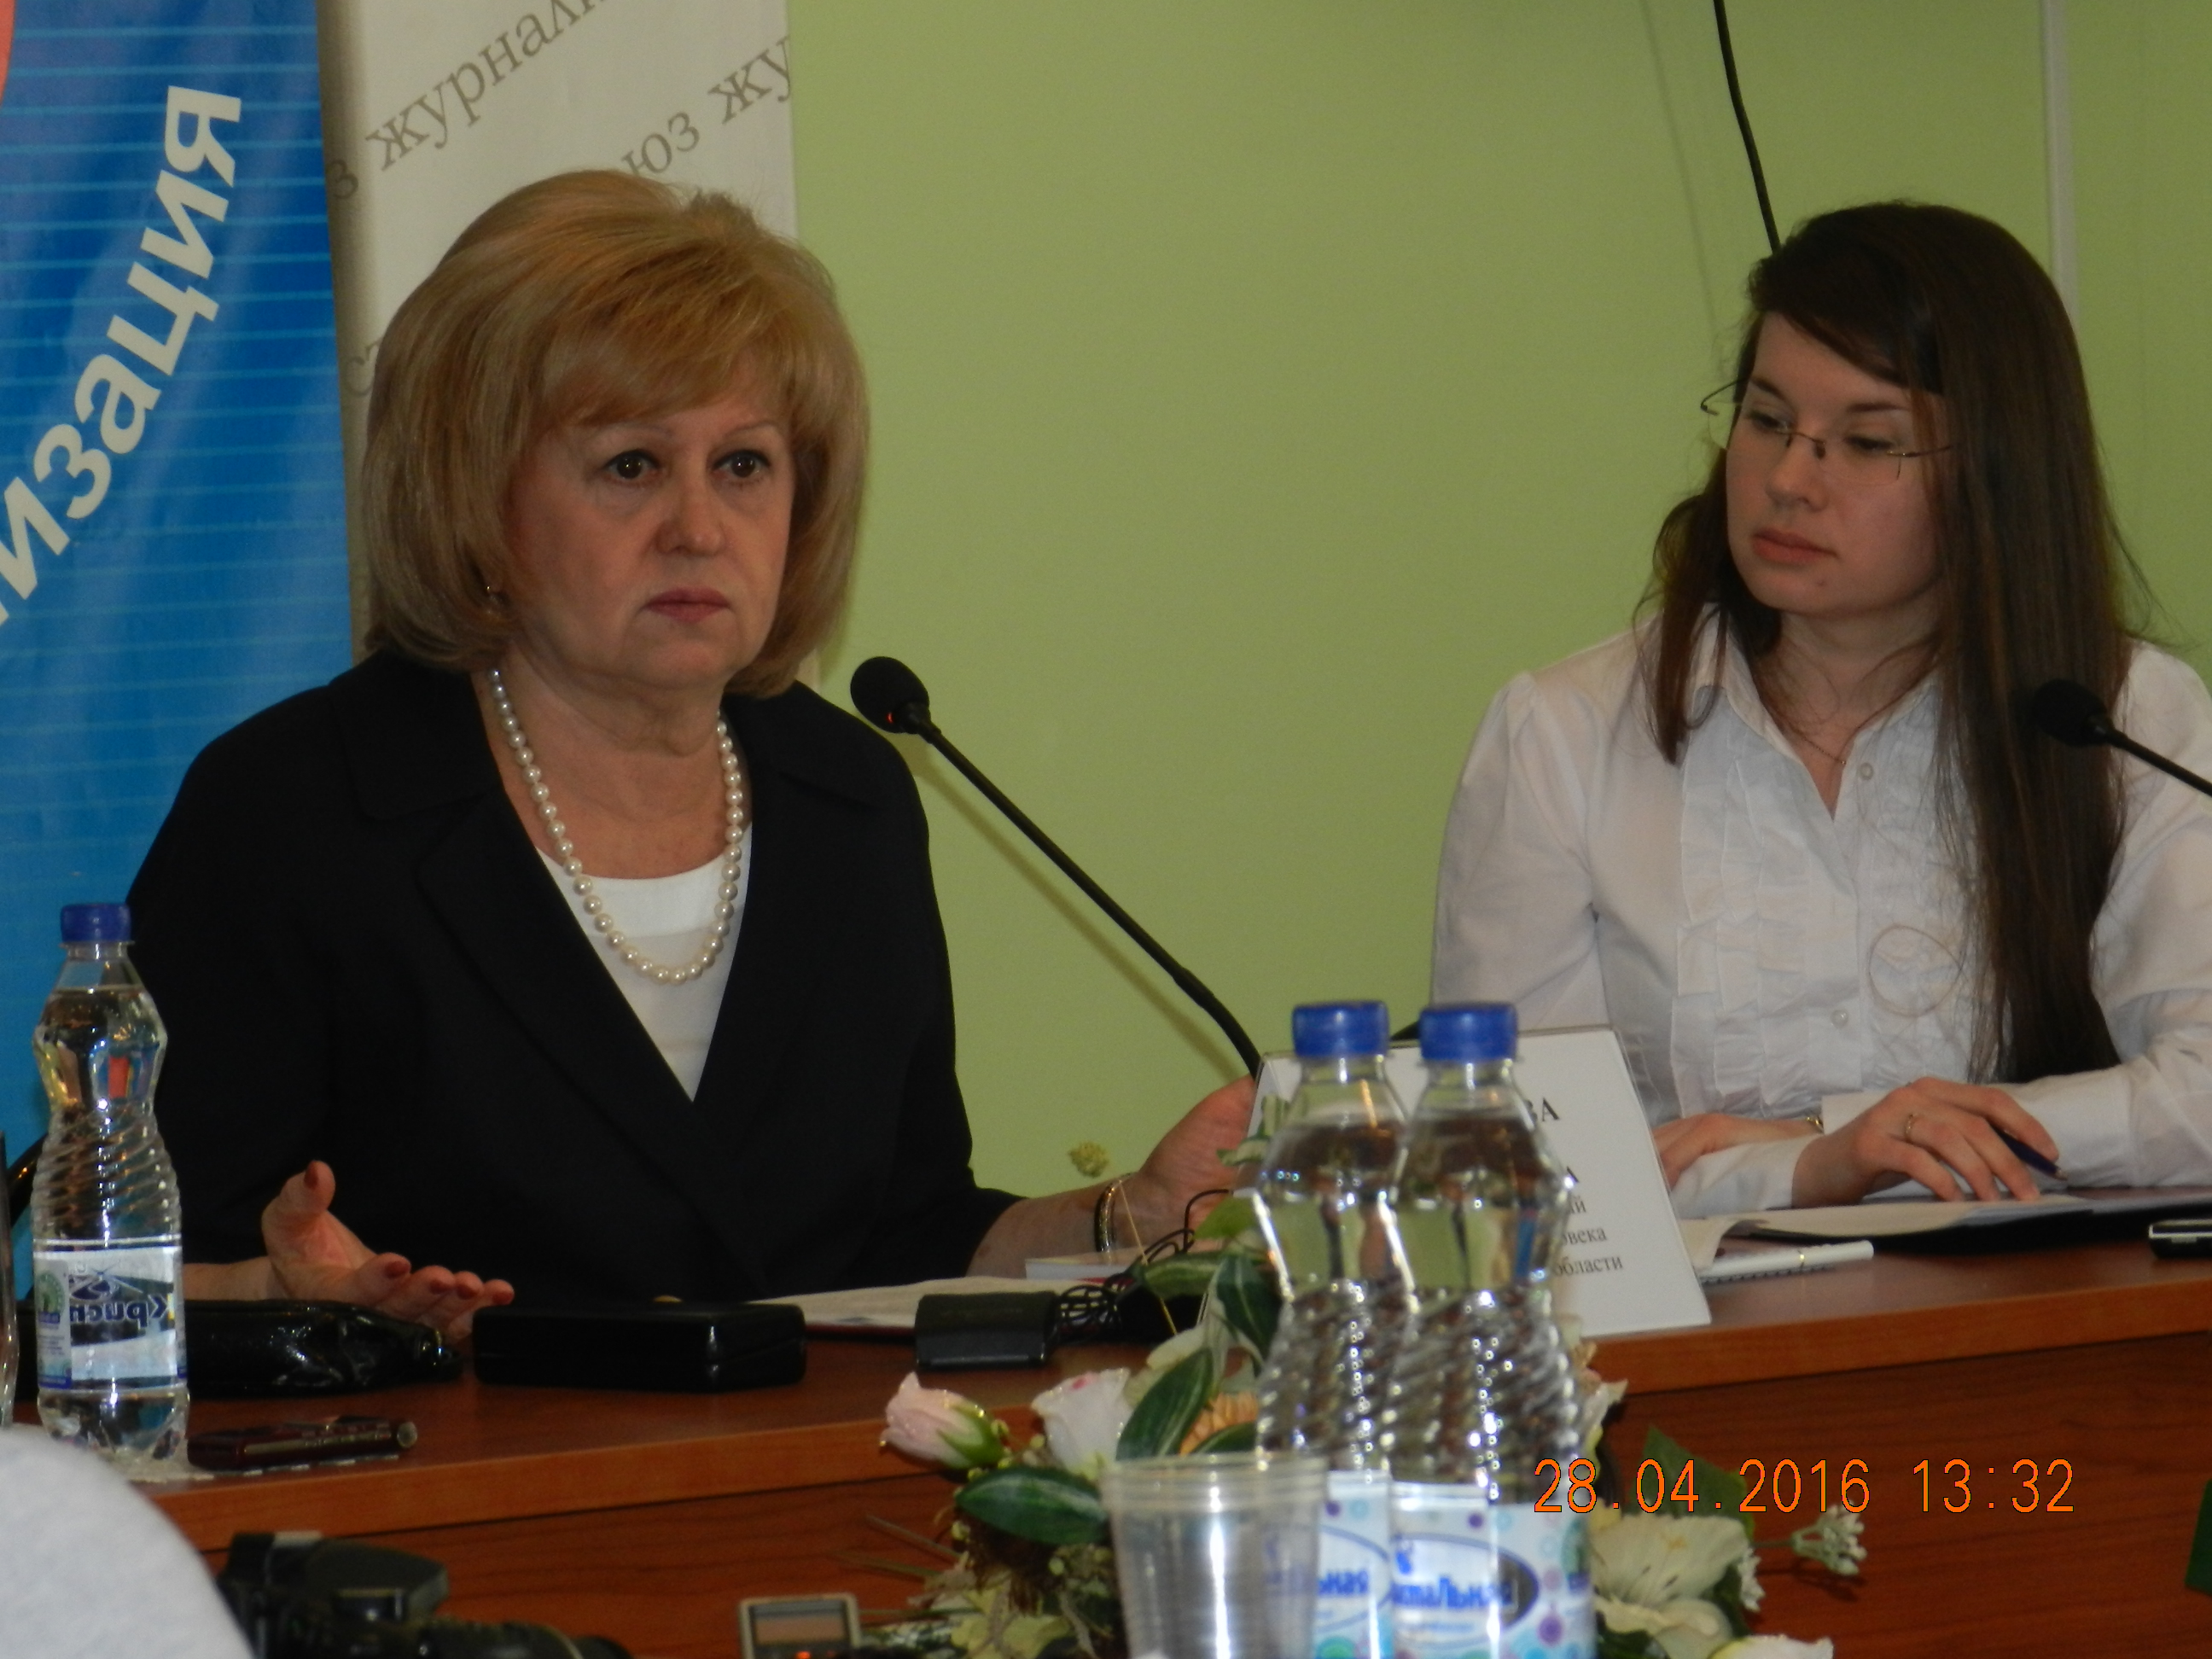 Пресс-конференция Уполномоченного по правам человека в Самарской области 